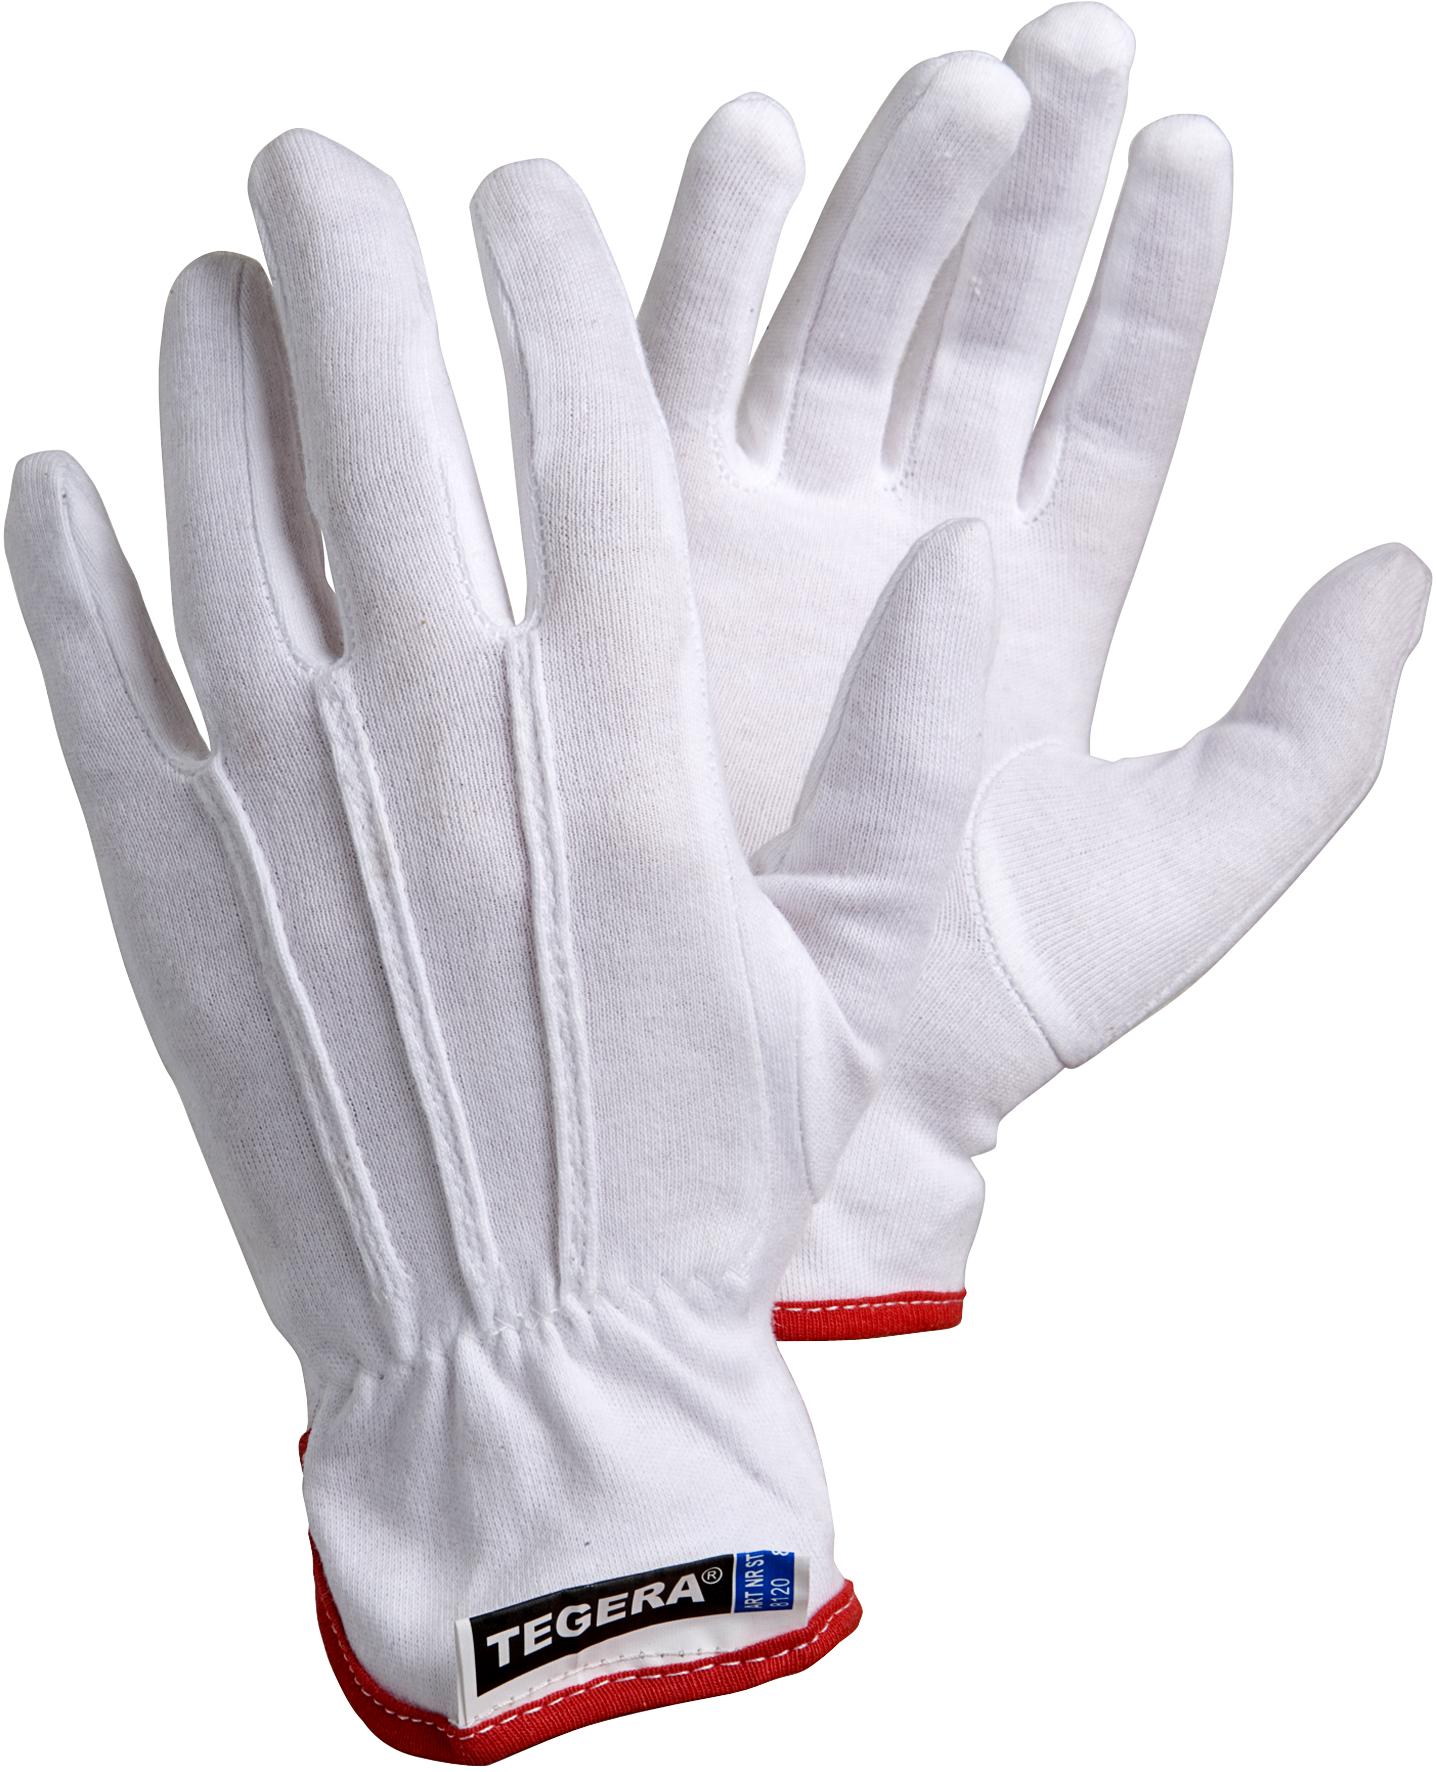 Cotton gloves 11